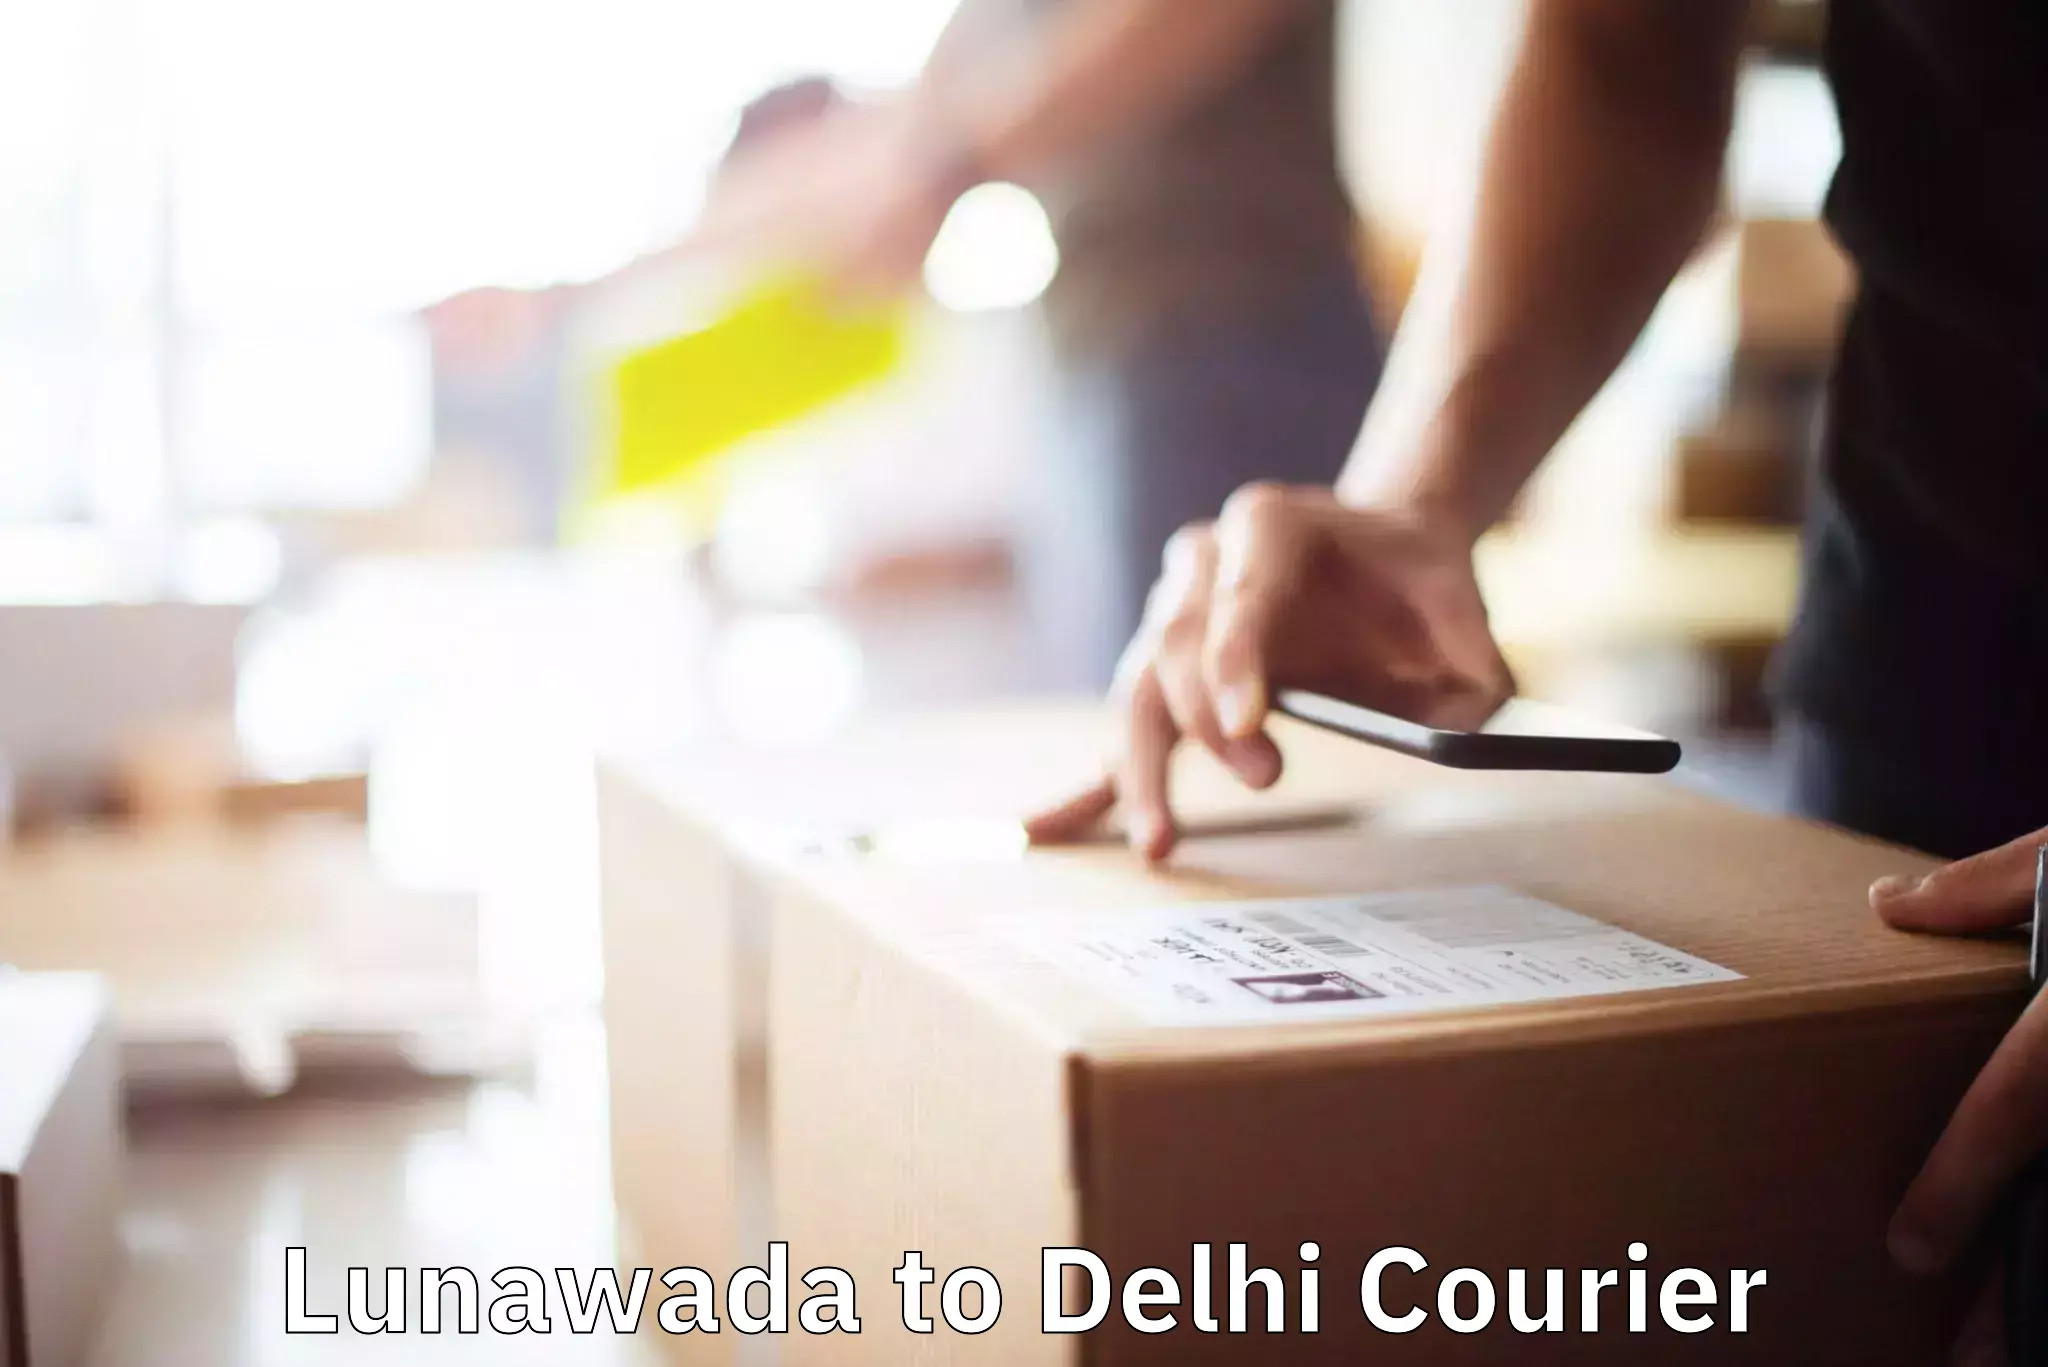 Household goods transport service Lunawada to NIT Delhi